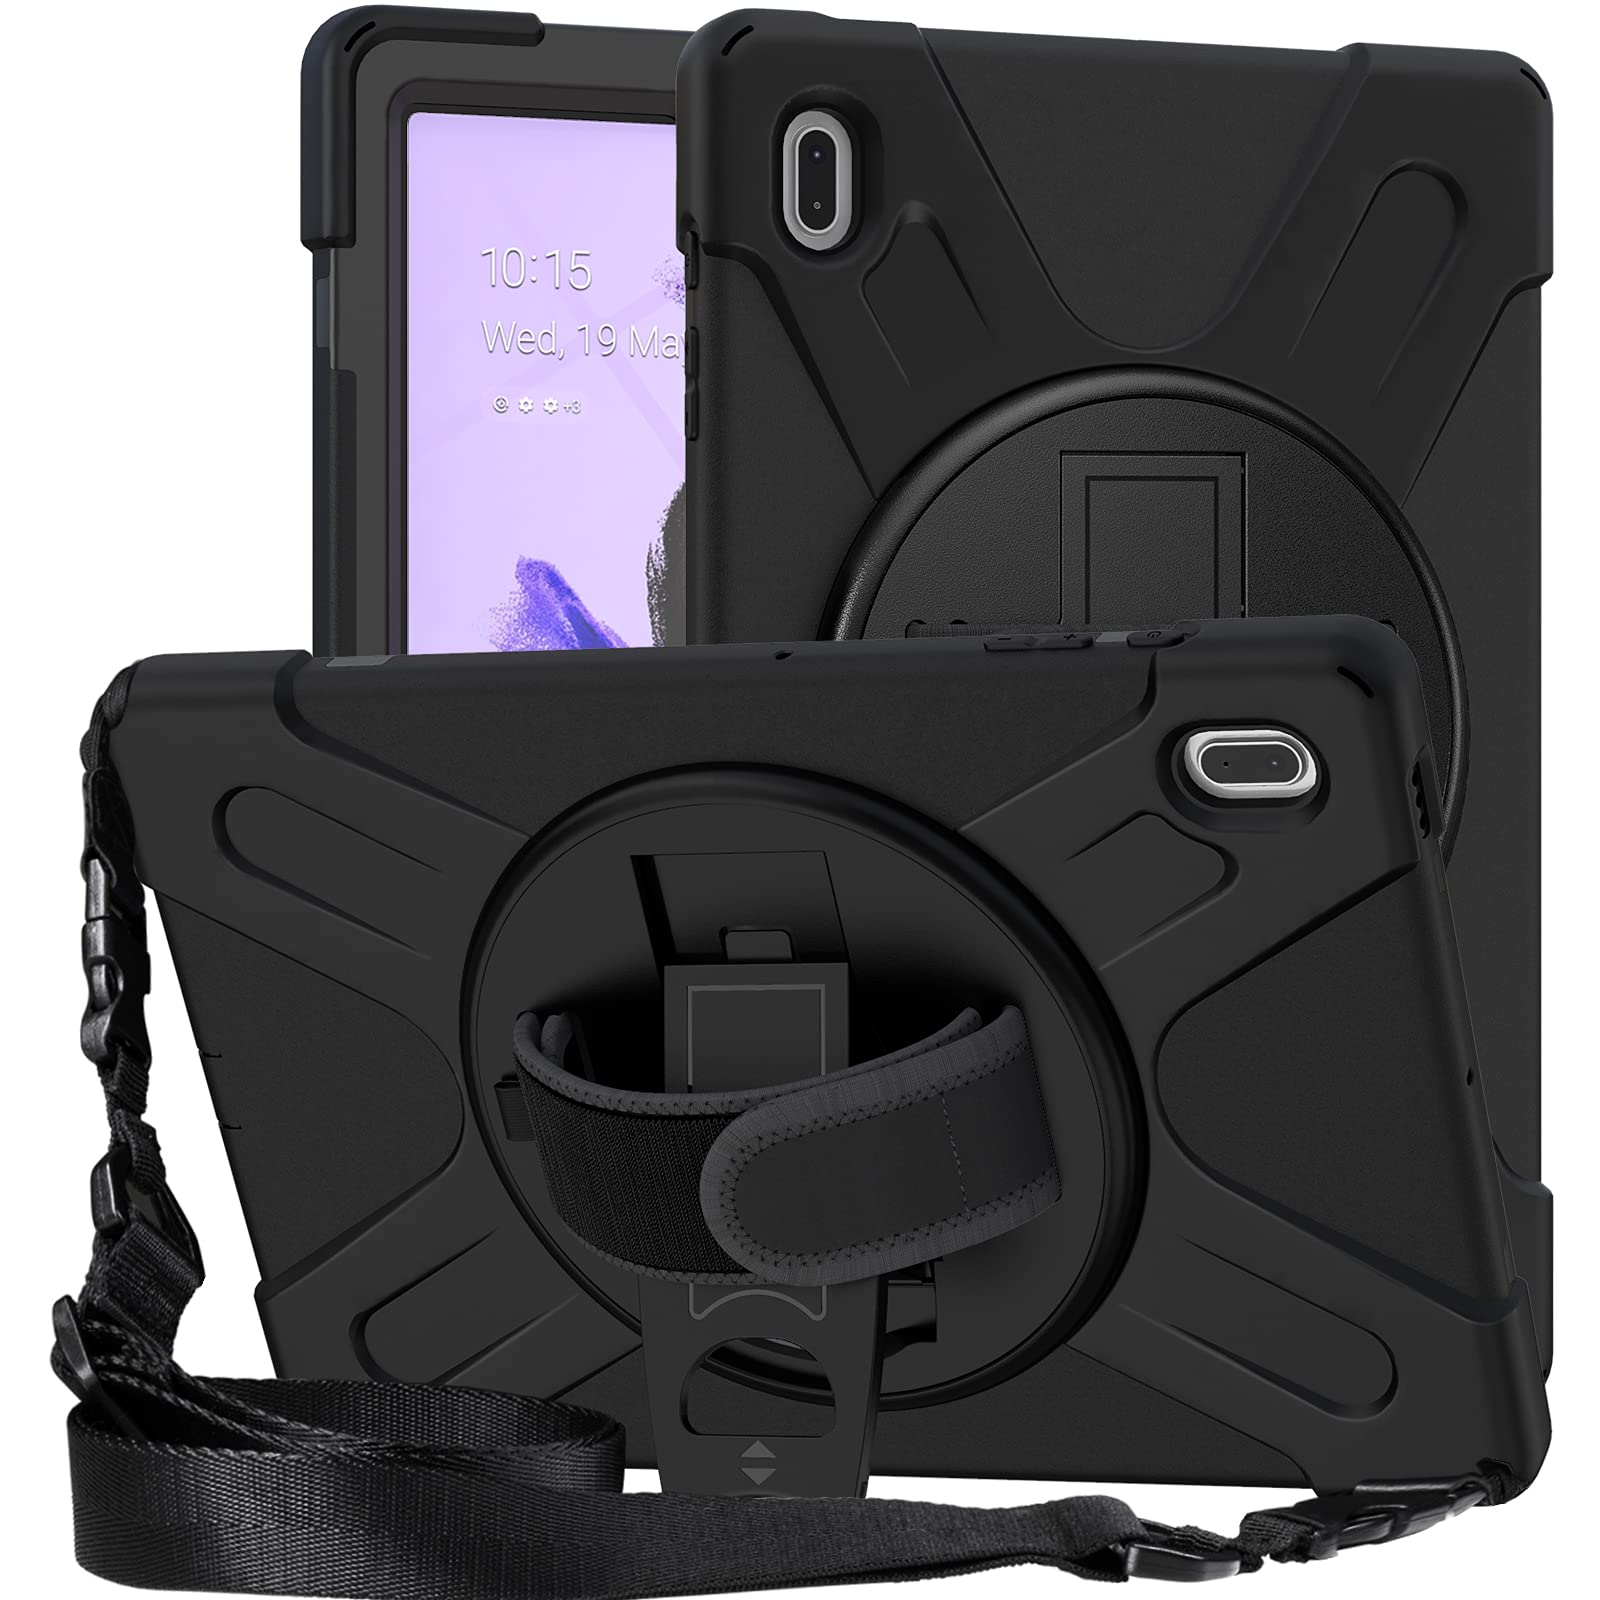 YGoal Hülle für Galaxy Tab S7 FE - [Handschlaufe] [Schultergurt] Robuste Schutzhülle mit Fallschutz Case Cover für Samsung Galaxy Tab S7 FE SM-T730/T736/T735, Schwarz